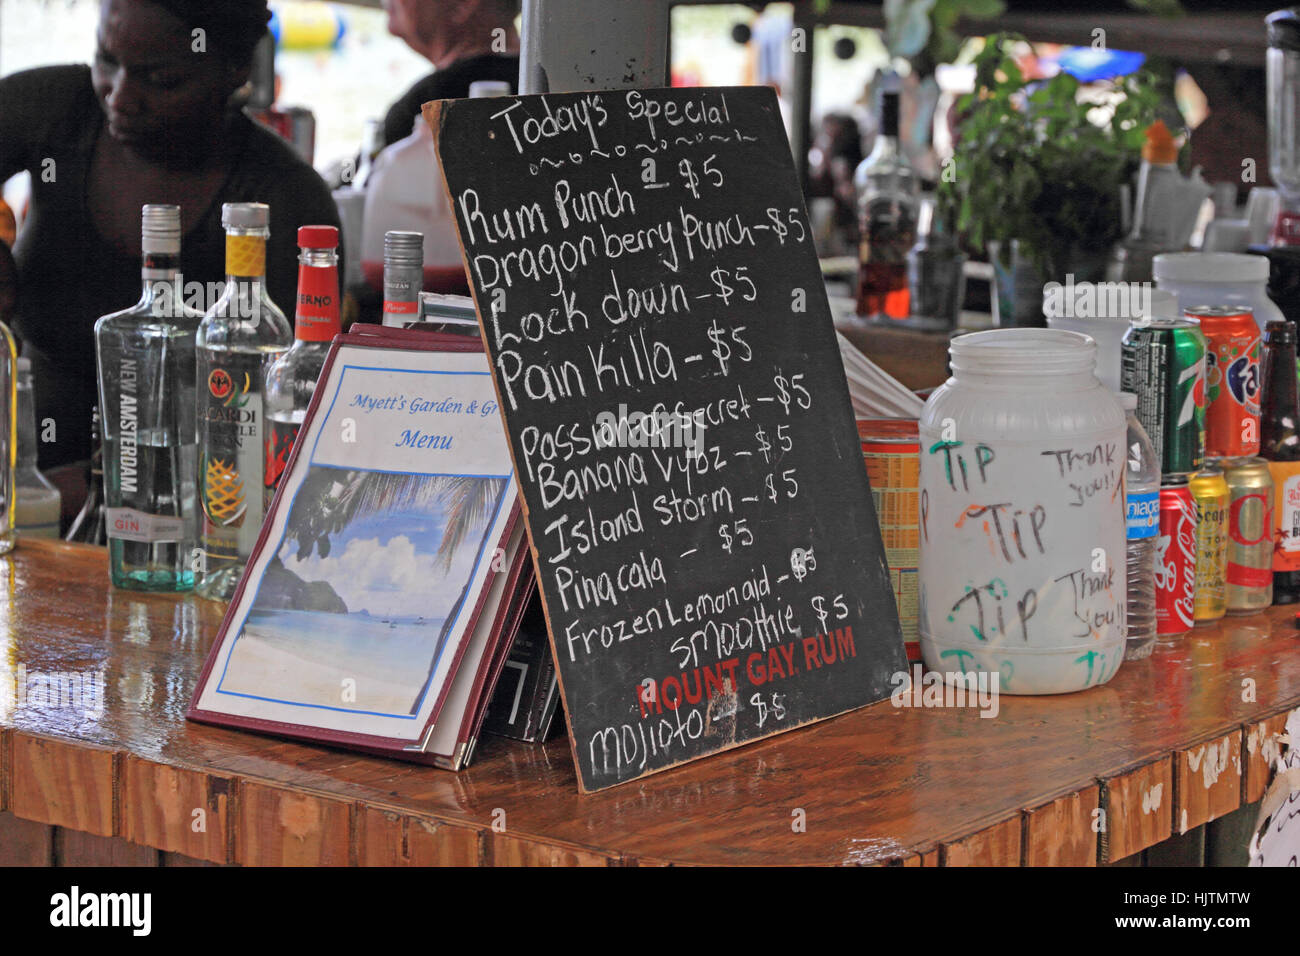 Il menu bevande presso il beach bar, giardino di canna Bay, Tortola Foto Stock